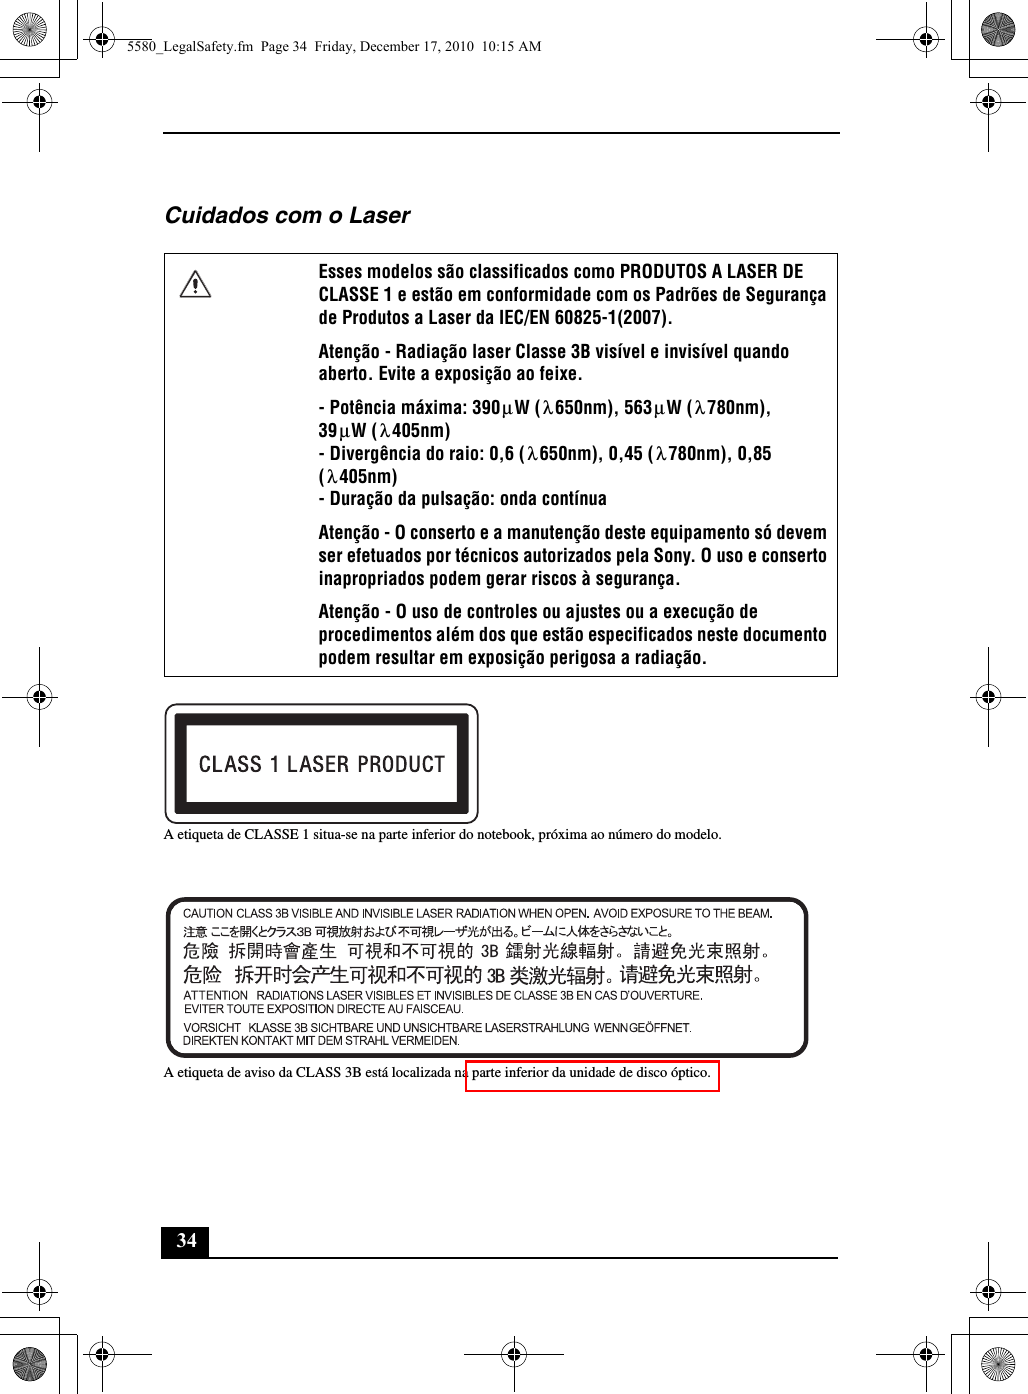 34Cuidados com o LaserA etiqueta de CLASSE 1 situa-se na parte inferior do notebook, próxima ao número do modelo.A etiqueta de aviso da CLASS 3B está localizada na parte inferior da unidade de disco óptico.Esses modelos são classificados como PRODUTOS A LASER DE CLASSE 1 e estão em conformidade com os Padrões de Segurança de Produtos a Laser da IEC/EN 60825-1(2007).Atenção - Radiação laser Classe 3B visível e invisível quando aberto. Evite a exposição ao feixe.- Potência máxima: 390 W ( 650nm), 563 W ( 780nm), 39 W ( 405nm)- Divergência do raio: 0,6 ( 650nm), 0,45 ( 780nm), 0,85 ( 405nm)- Duração da pulsação: onda contínuaAtenção - O conserto e a manutenção deste equipamento só devem ser efetuados por técnicos autorizados pela Sony. O uso e conserto inapropriados podem gerar riscos à segurança.Atenção - O uso de controles ou ajustes ou a execução de procedimentos além dos que estão especificados neste documento podem resultar em exposição perigosa a radiação.μλμλμλλλλ5580_LegalSafety.fm  Page 34  Friday, December 17, 2010  10:15 AM